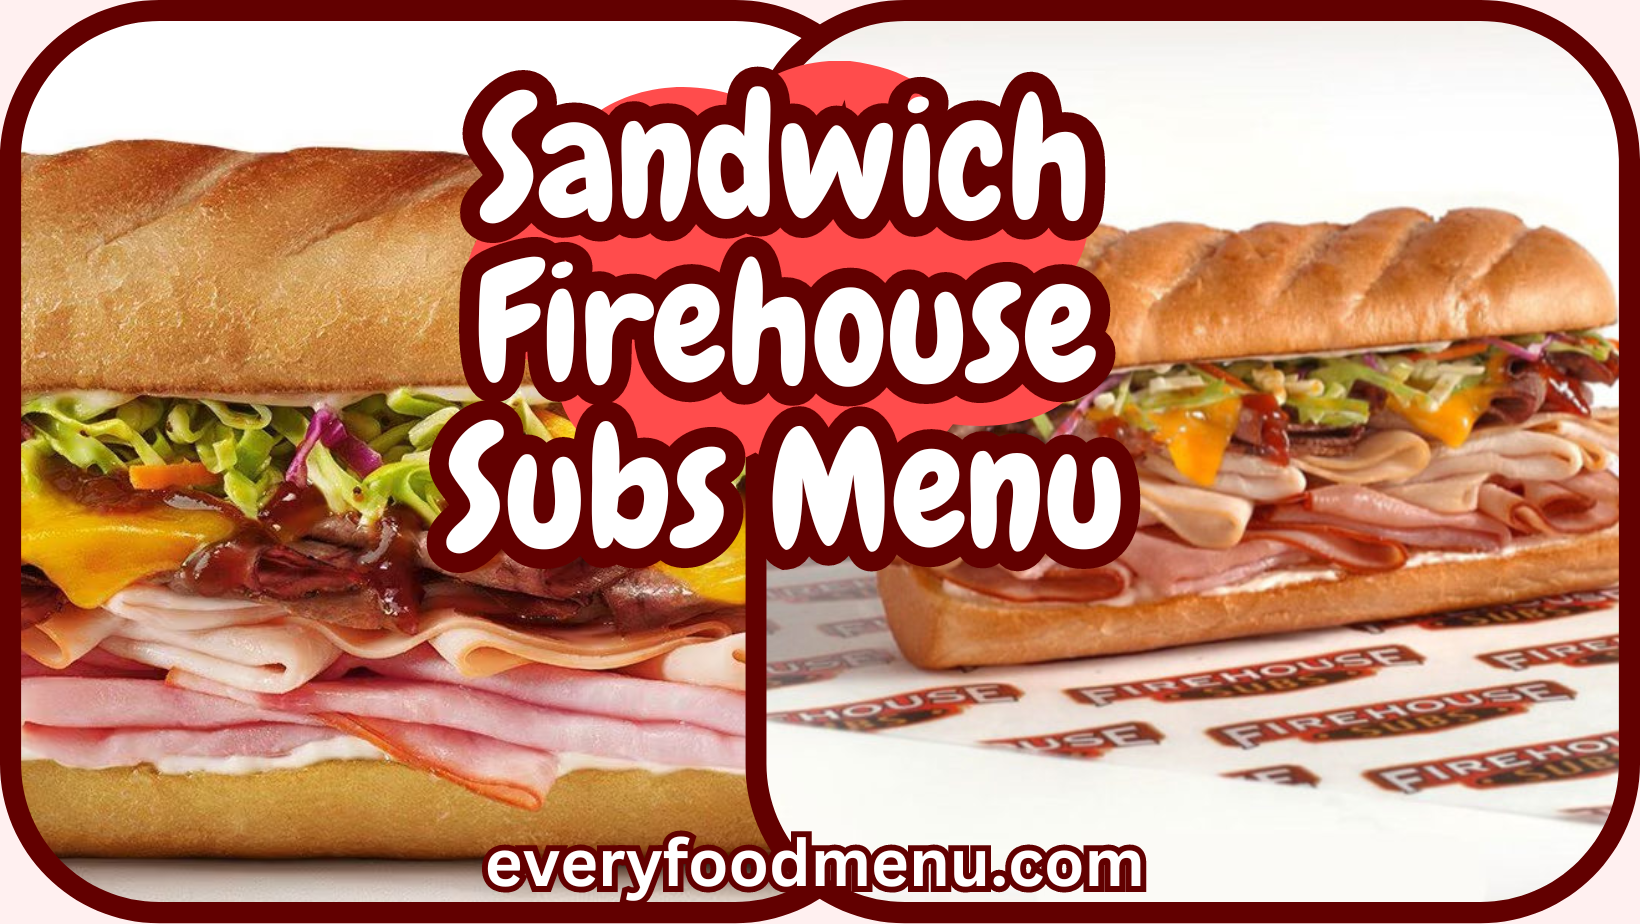 Sandwich Firehouse Subs Menu